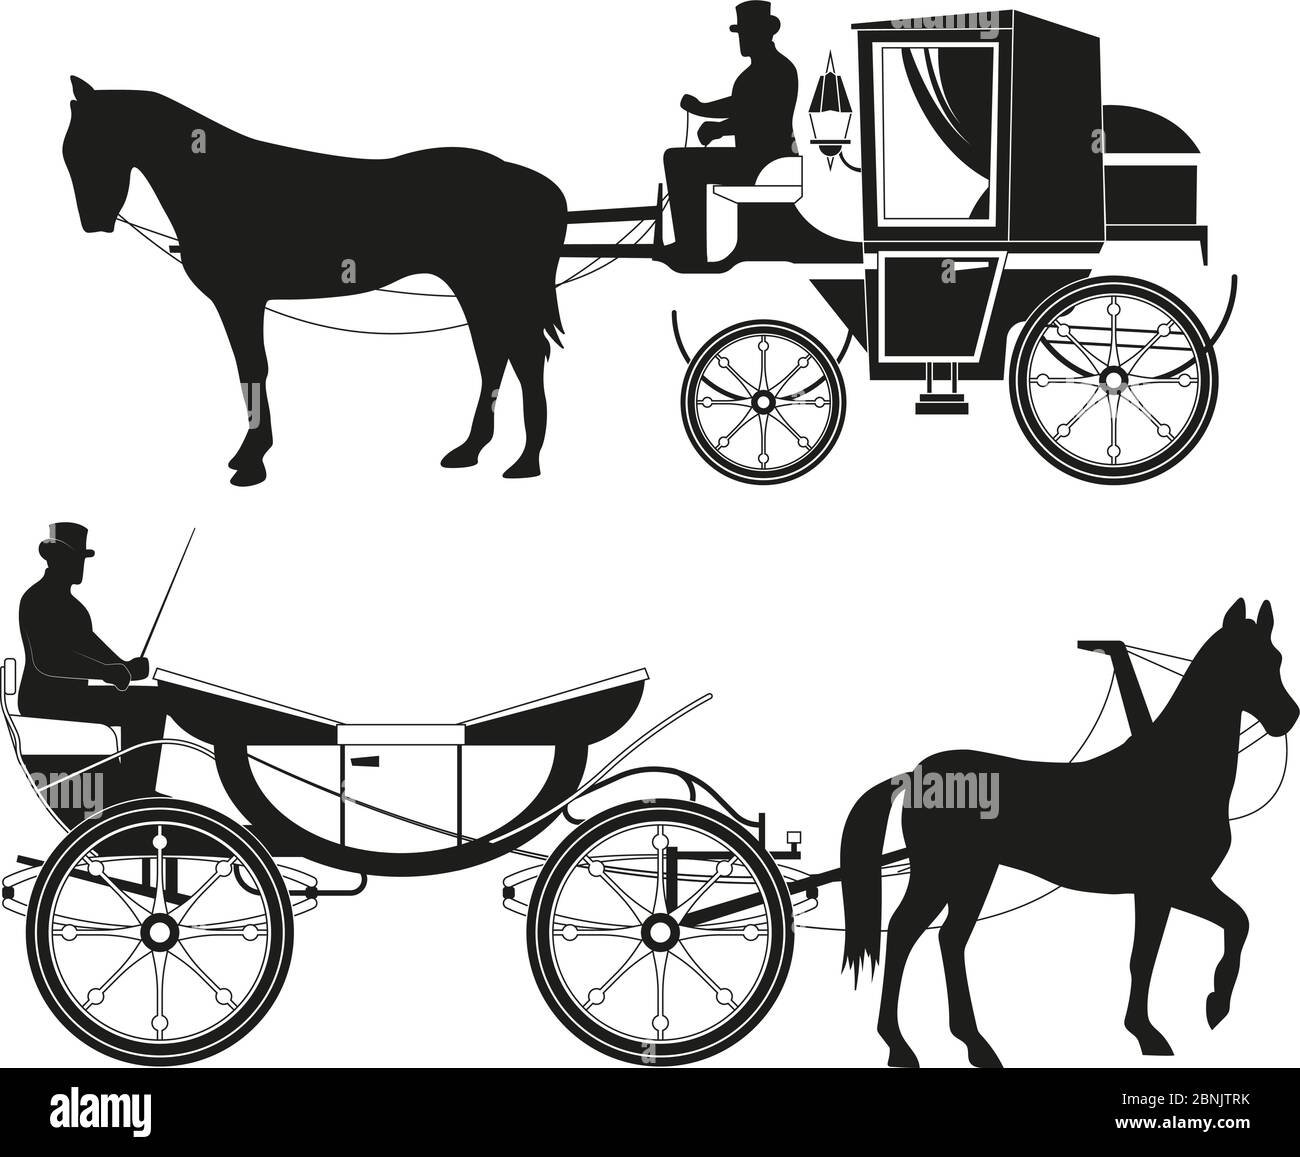 Voitures d'époque avec chevaux. Images vectorielles de transport rétro de contes de fées Illustration de Vecteur